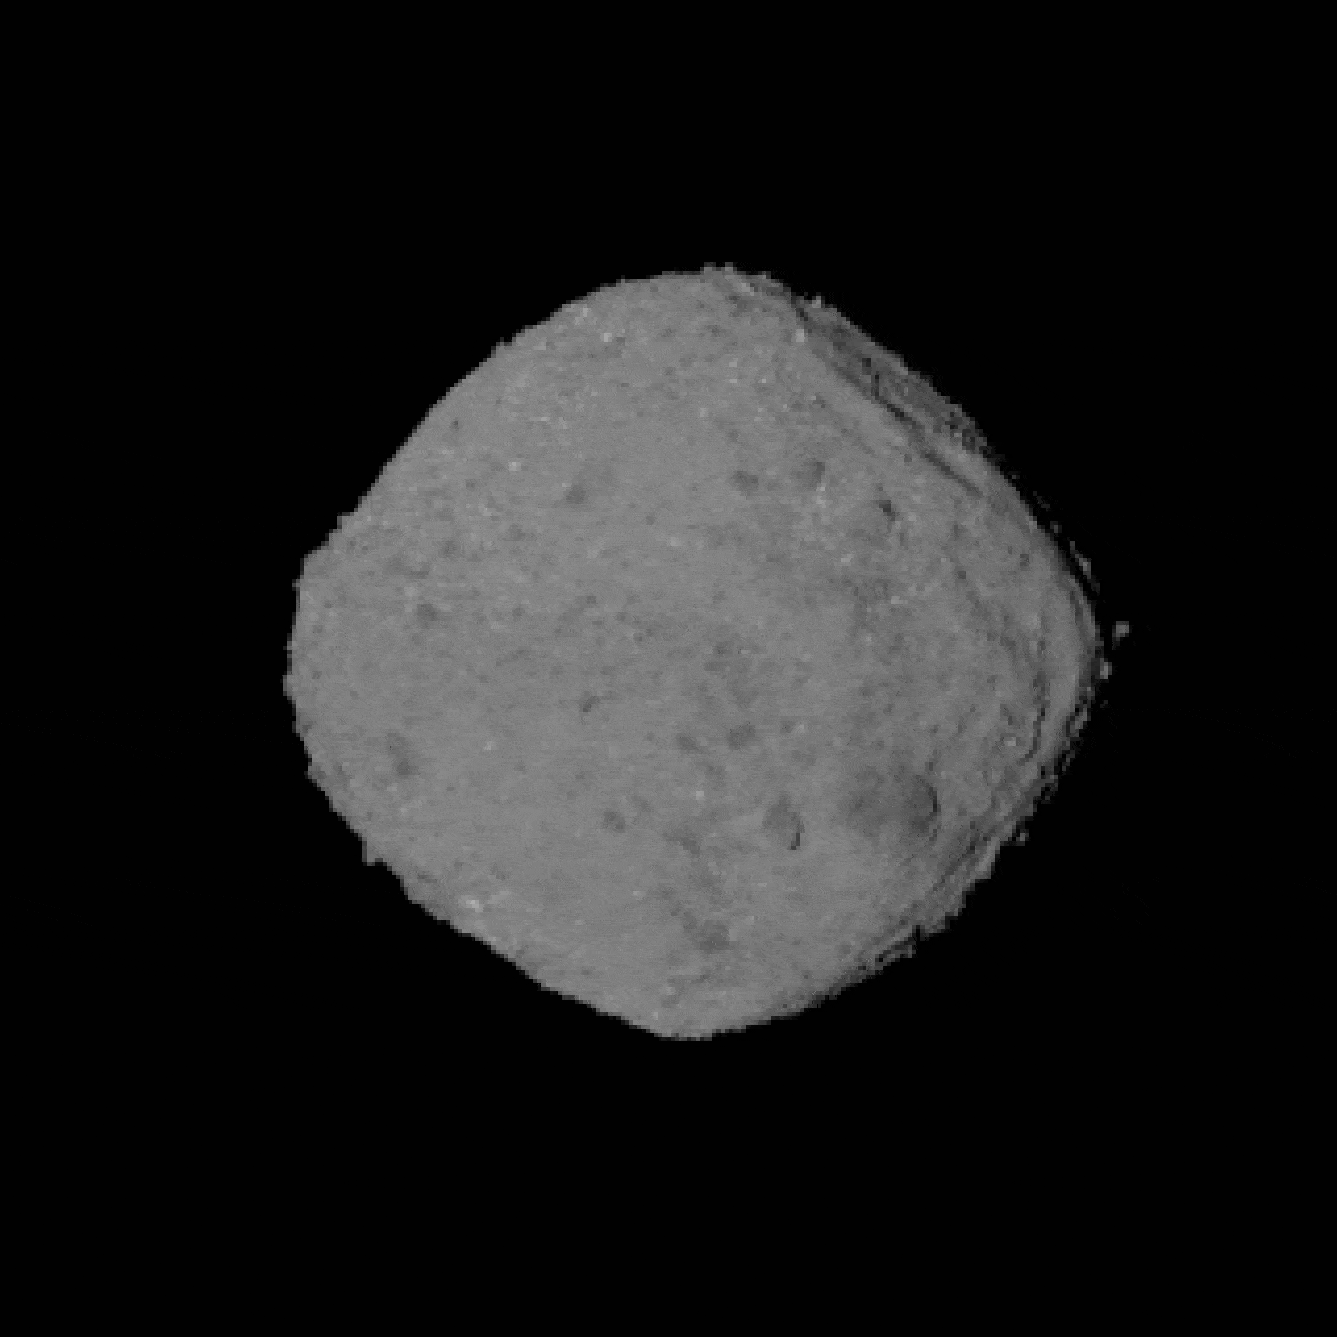 Зображення астероїда Бенну, отримане з кільких знімків OSIRIS-REx. Камера апарата фіксувала кожні 10 градусів обертання астероїда з відстані 197 кілометрів від нього. NASA/Goddard / University of Arizona